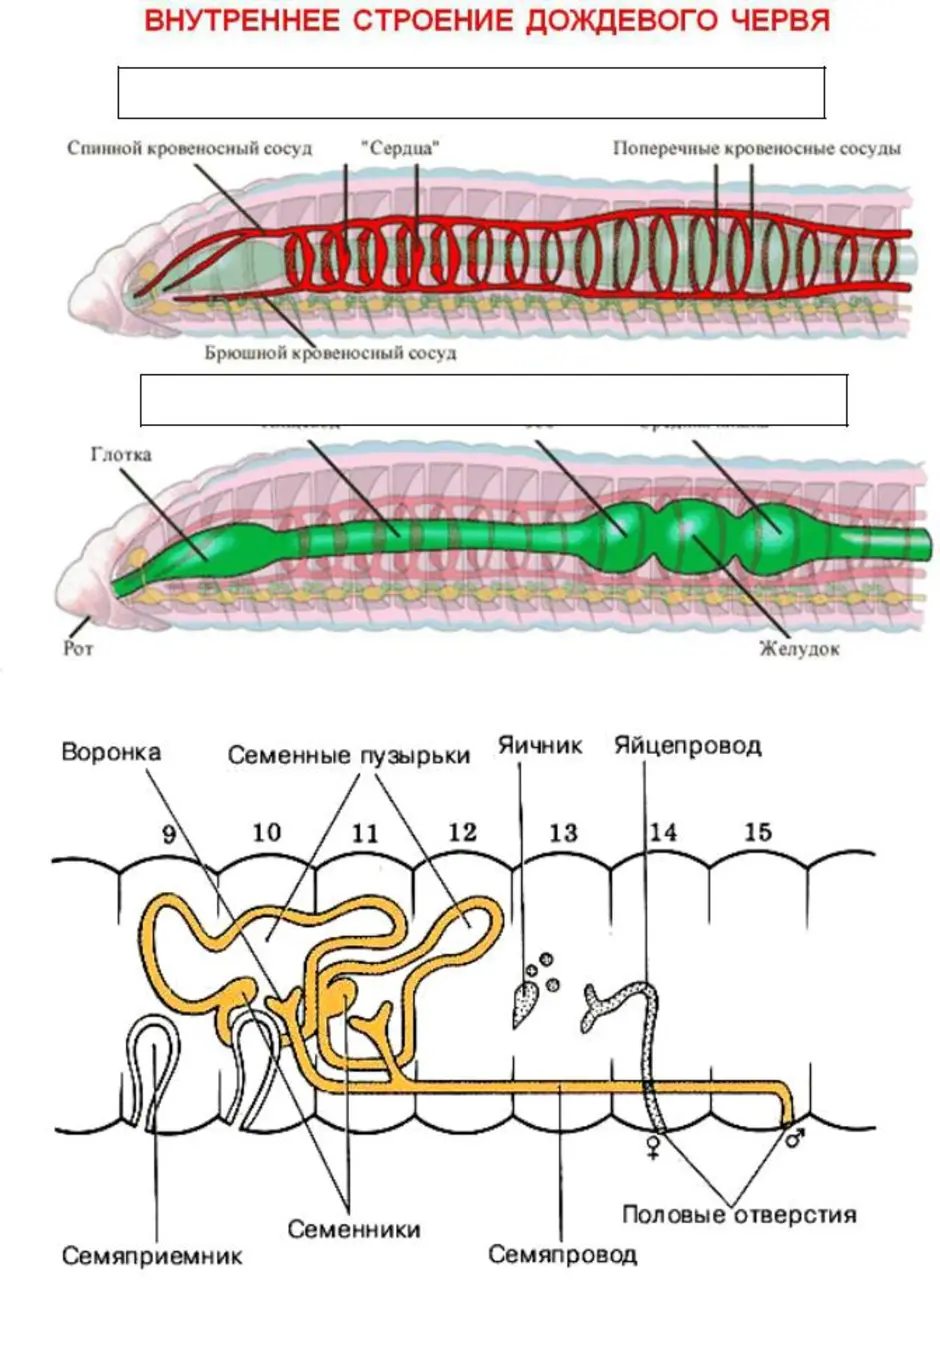 Пищеварительная система органов кольчатых червей. Строение половой системы дождевого червя. Внутреннее строение дождевого червя системы органов. Системы дождевого червя таблица. Кольчатый червь строение половой системы.